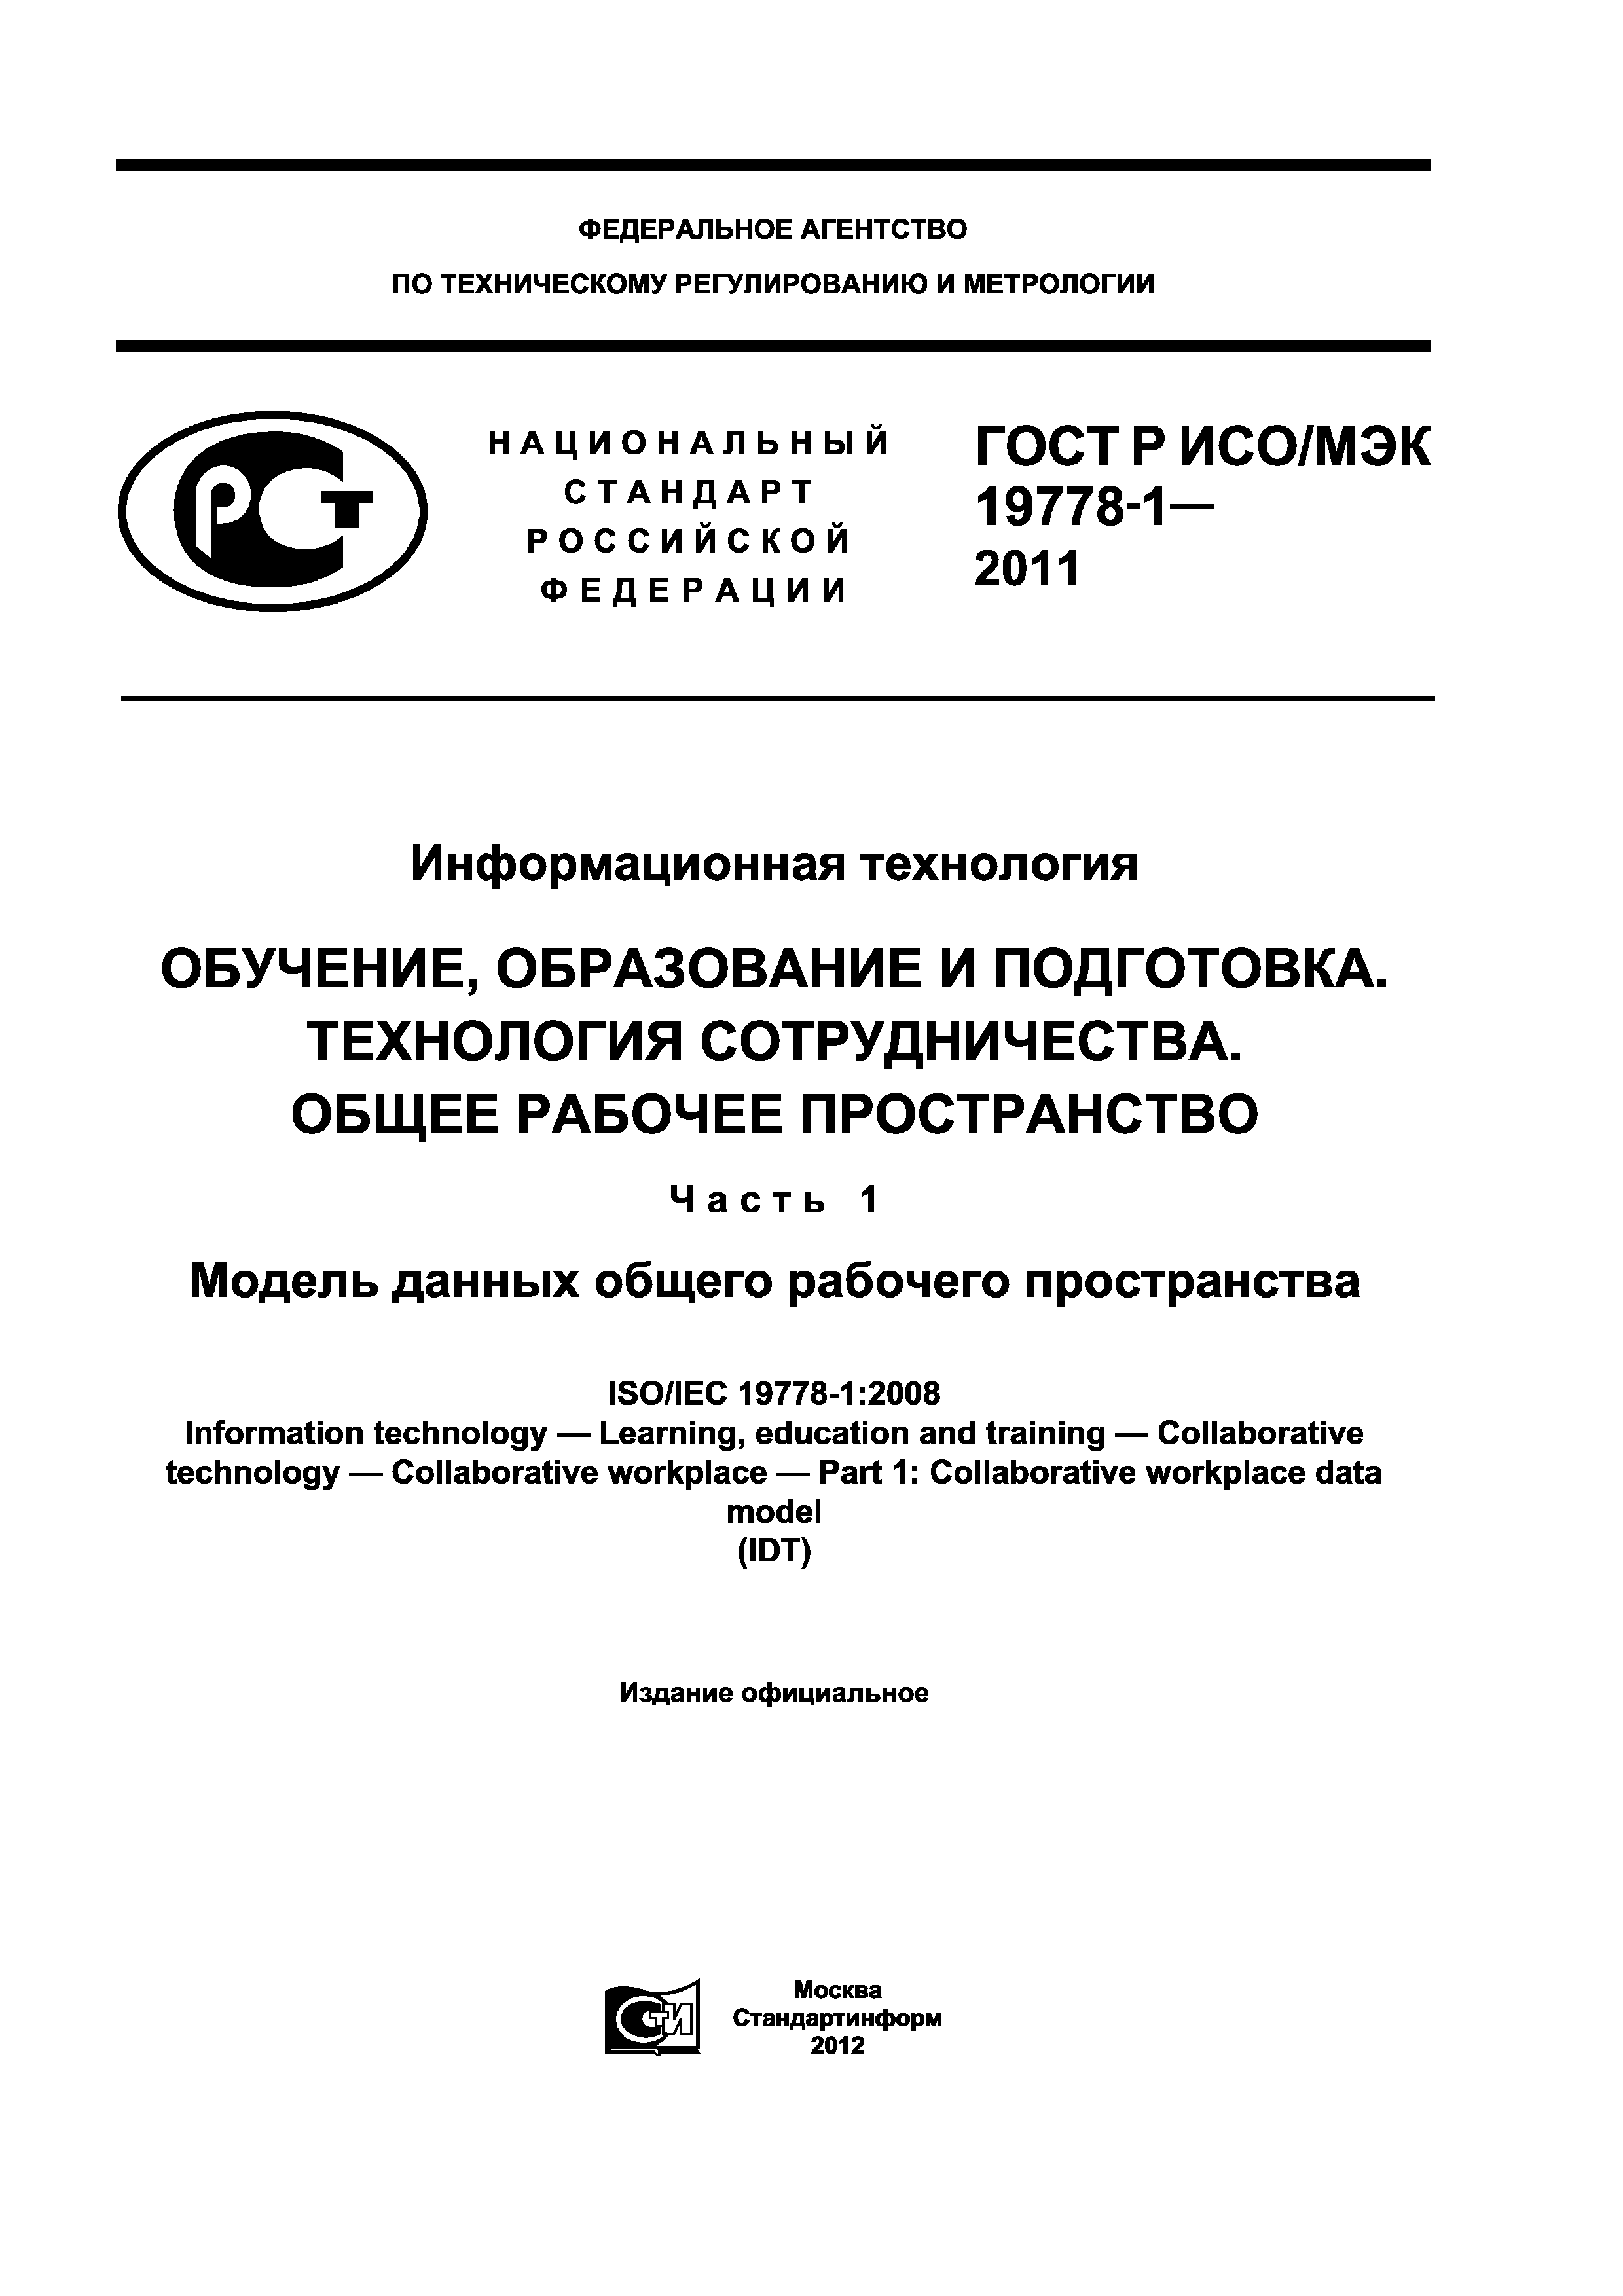 ГОСТ Р ИСО/МЭК 19778-1-2011